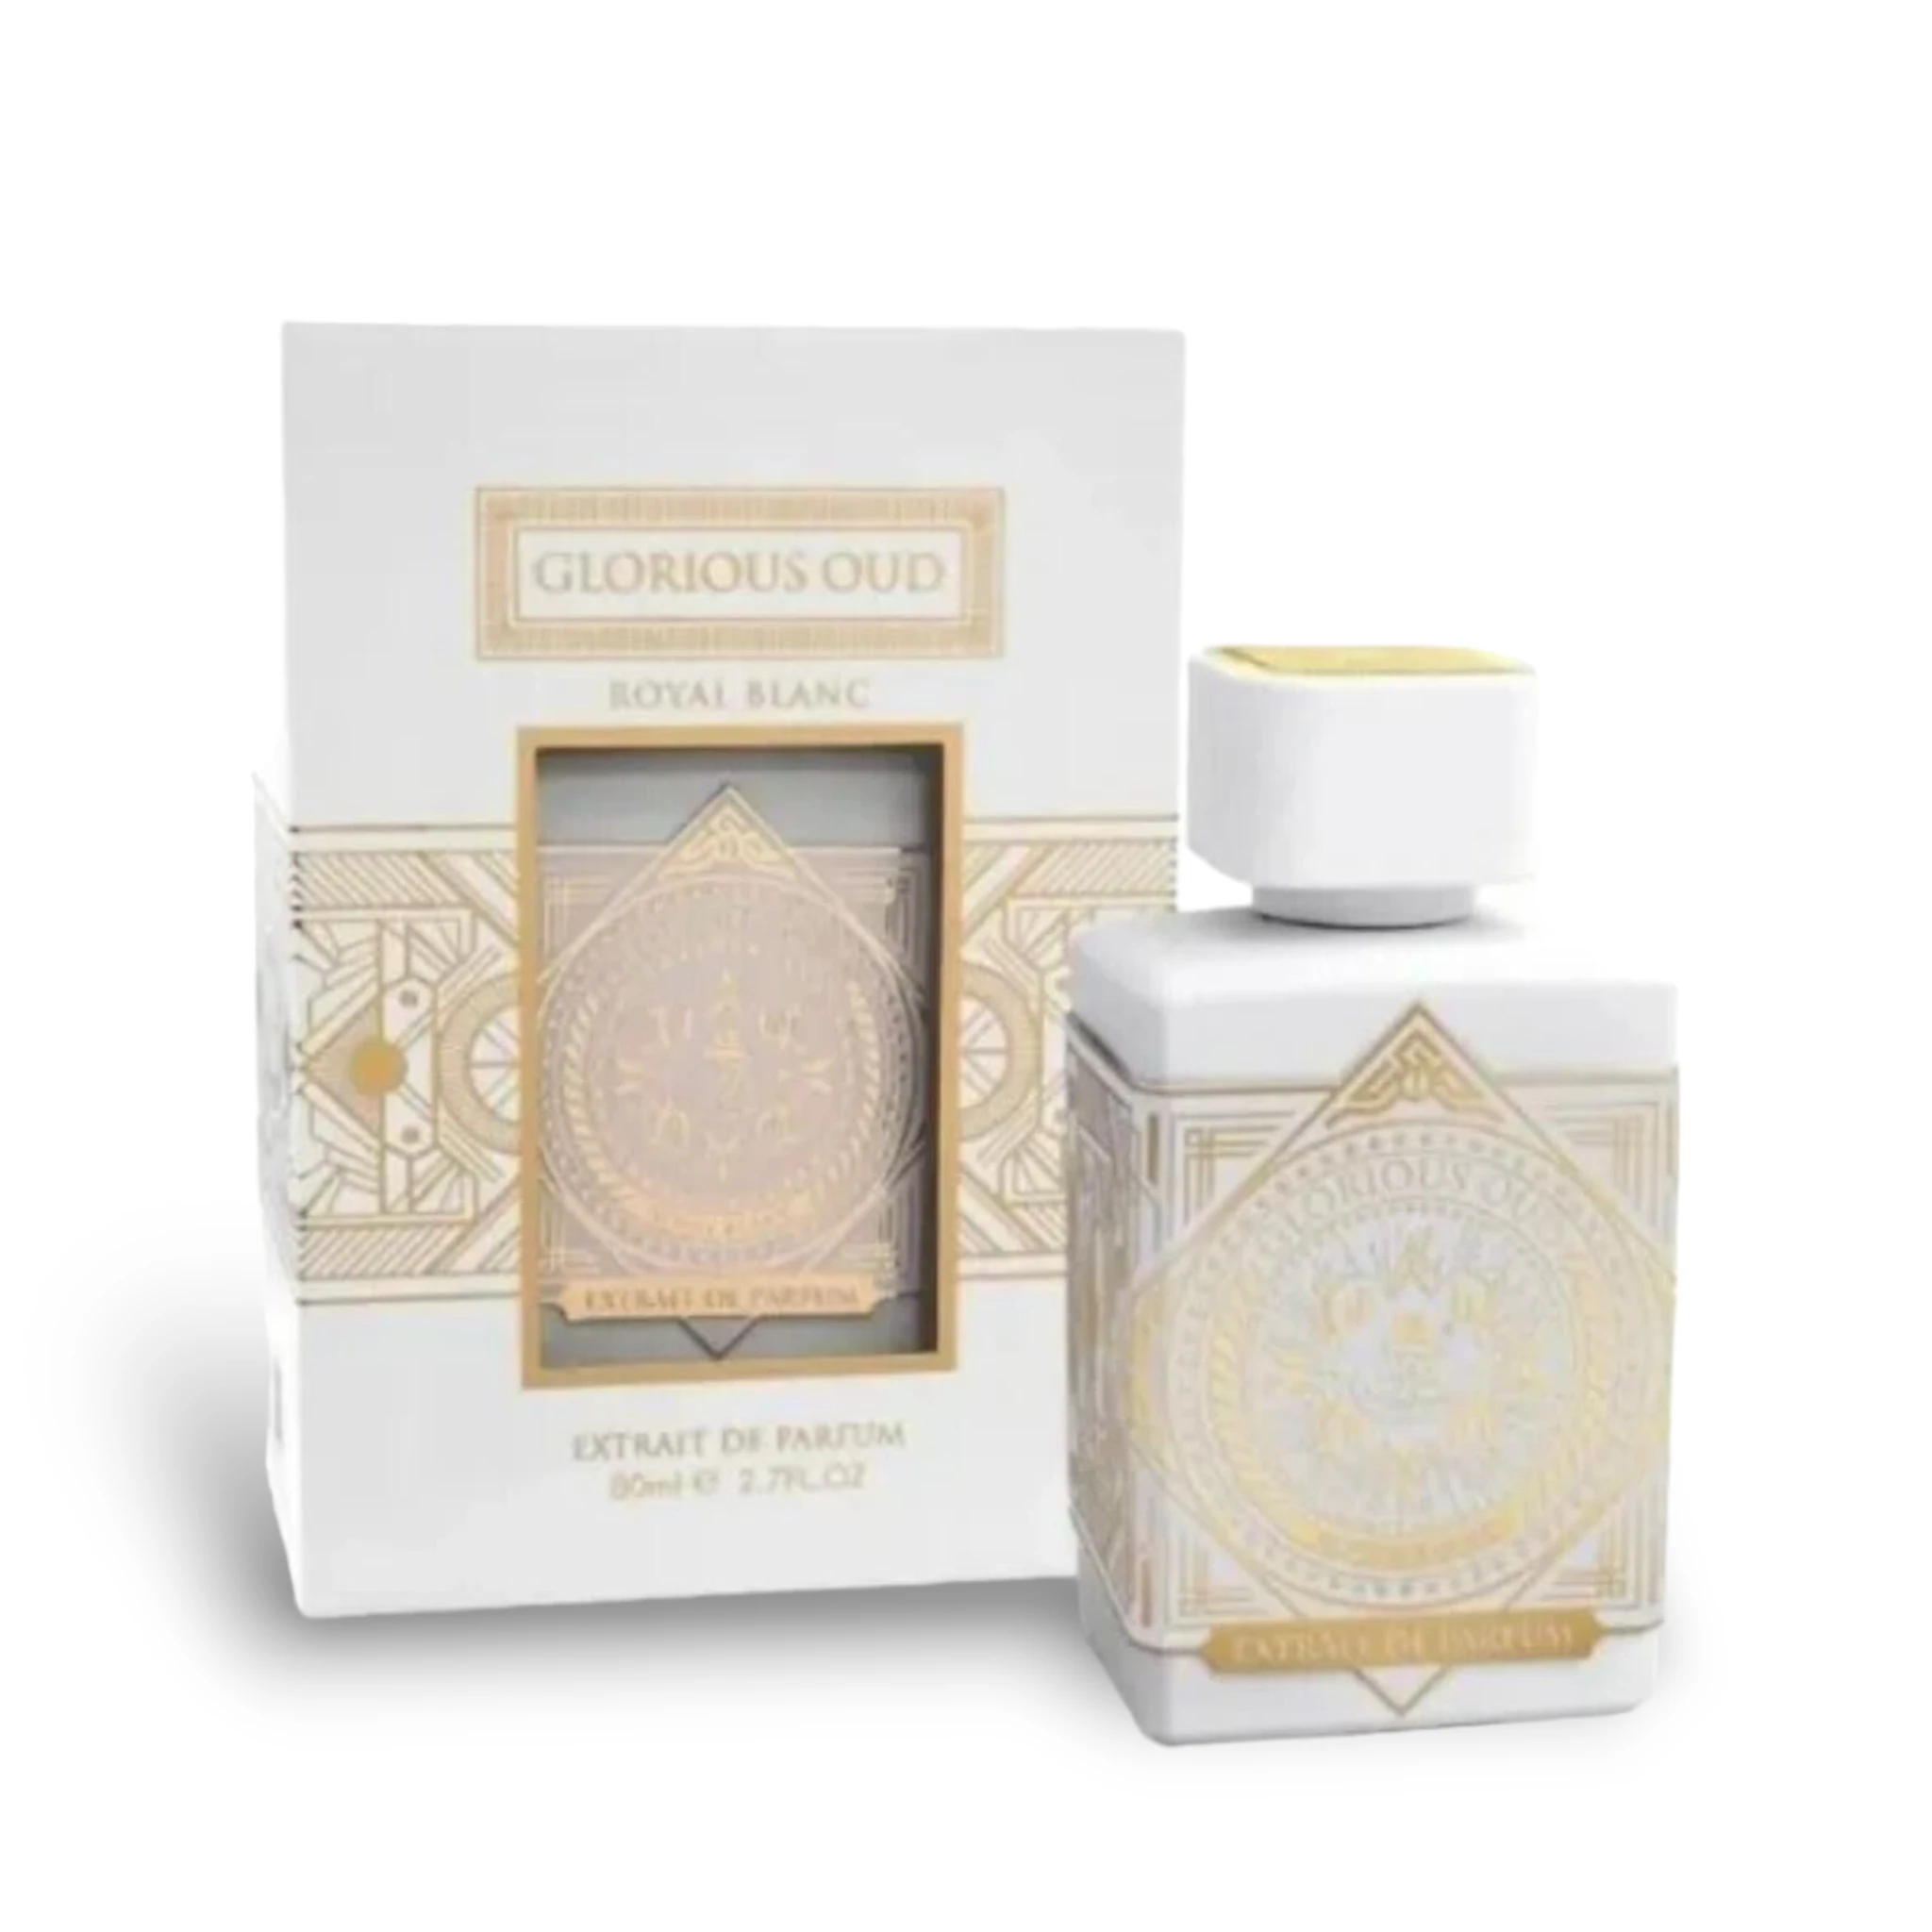 Glorious Oud Royal Blanc Extrait De Parfum 80Ml By Fa Paris (Fragrance World) 